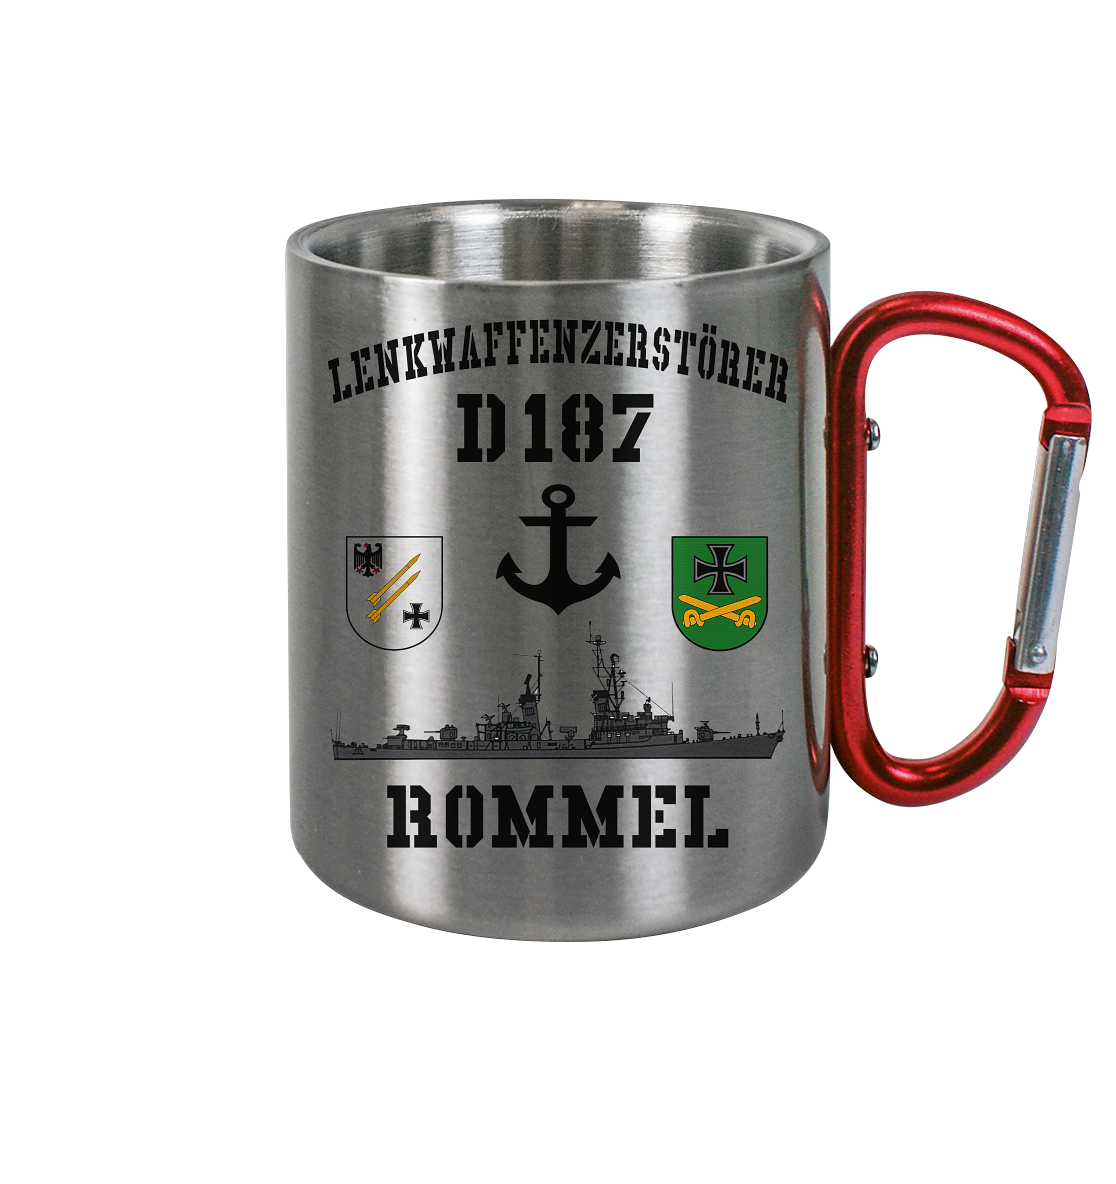 Lenkwaffenzerstörer D187 ROMMEL Anker - Edelstahl Tasse